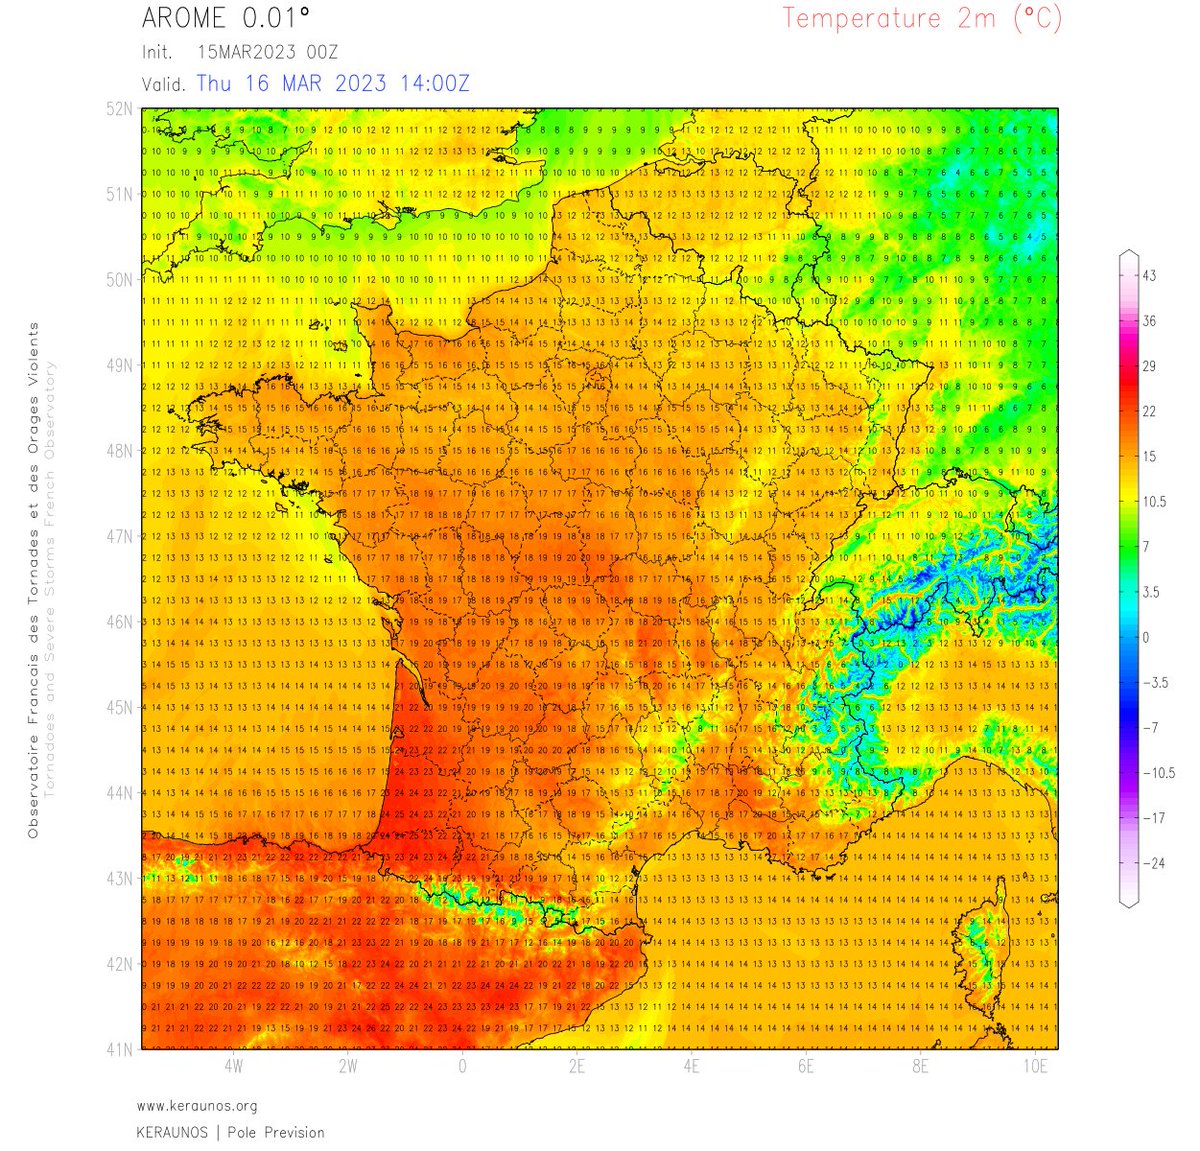 Nouvel épisode de chaleur dans le sud-ouest prévu en ce jeudi avec 25/26°C possibles en Aquitaine. FrRXkHEWcAY9-MN